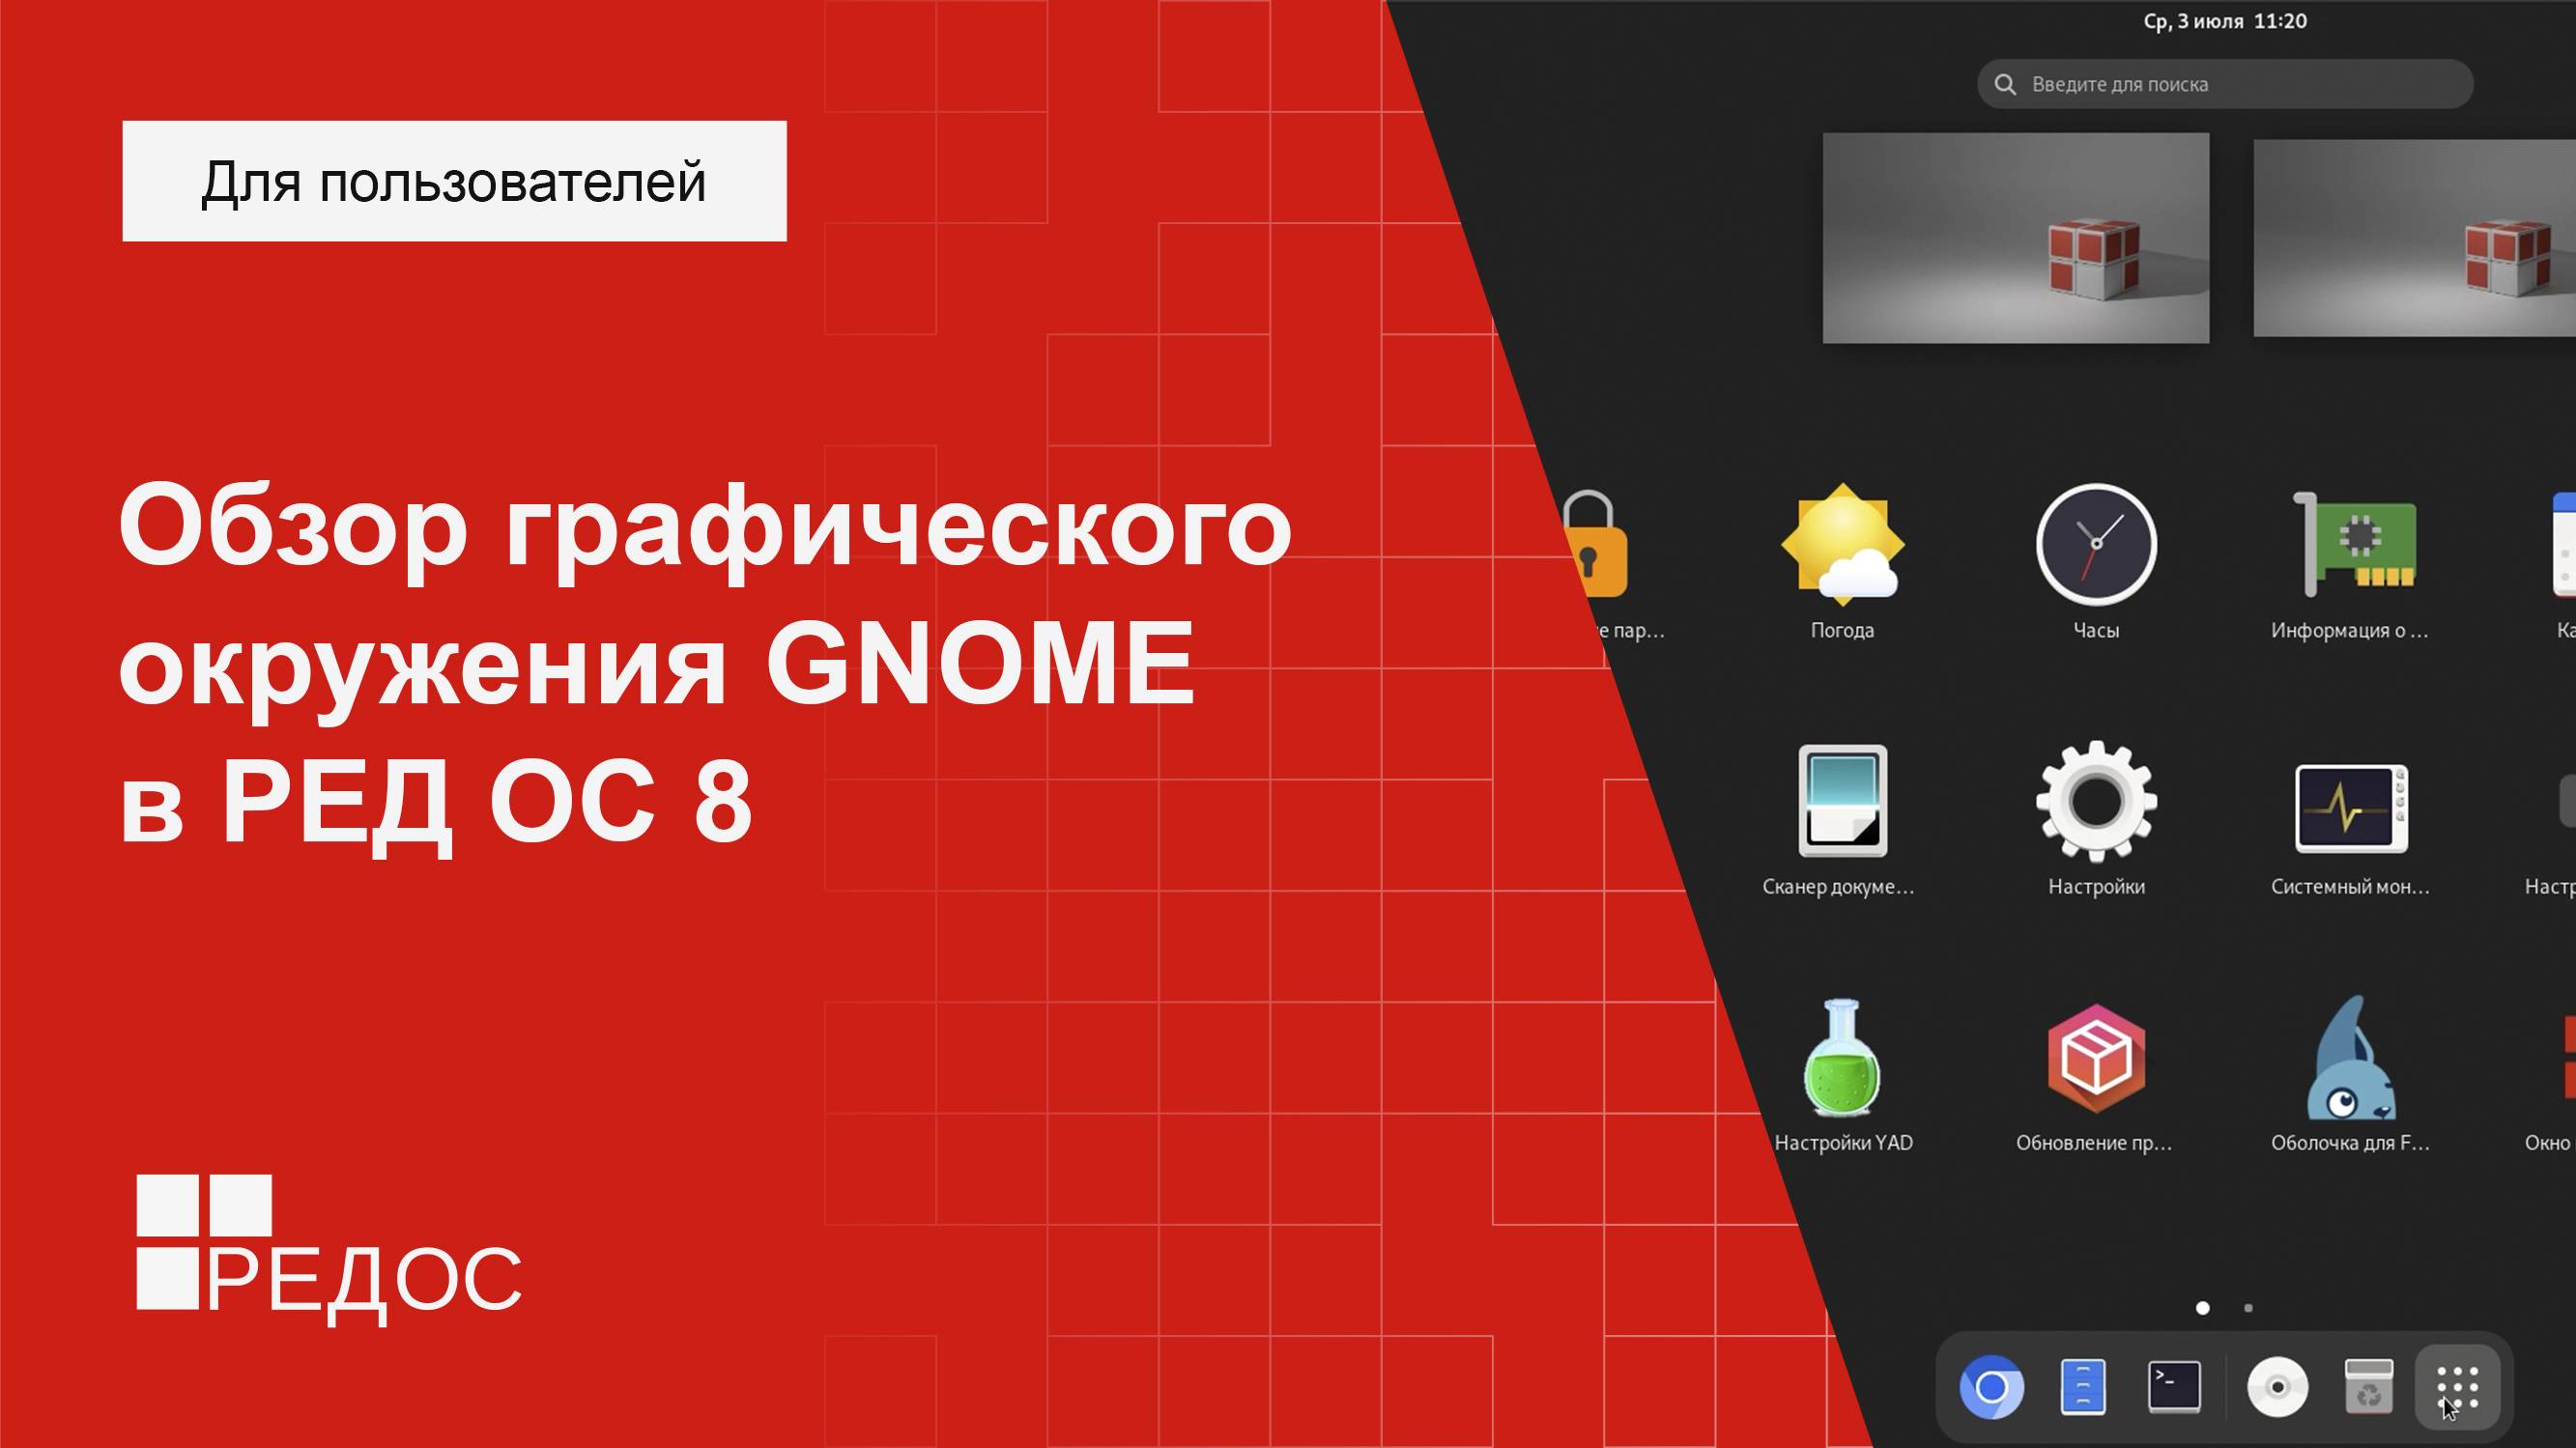 Обзор графического окружения GNOME в РЕД ОС 8